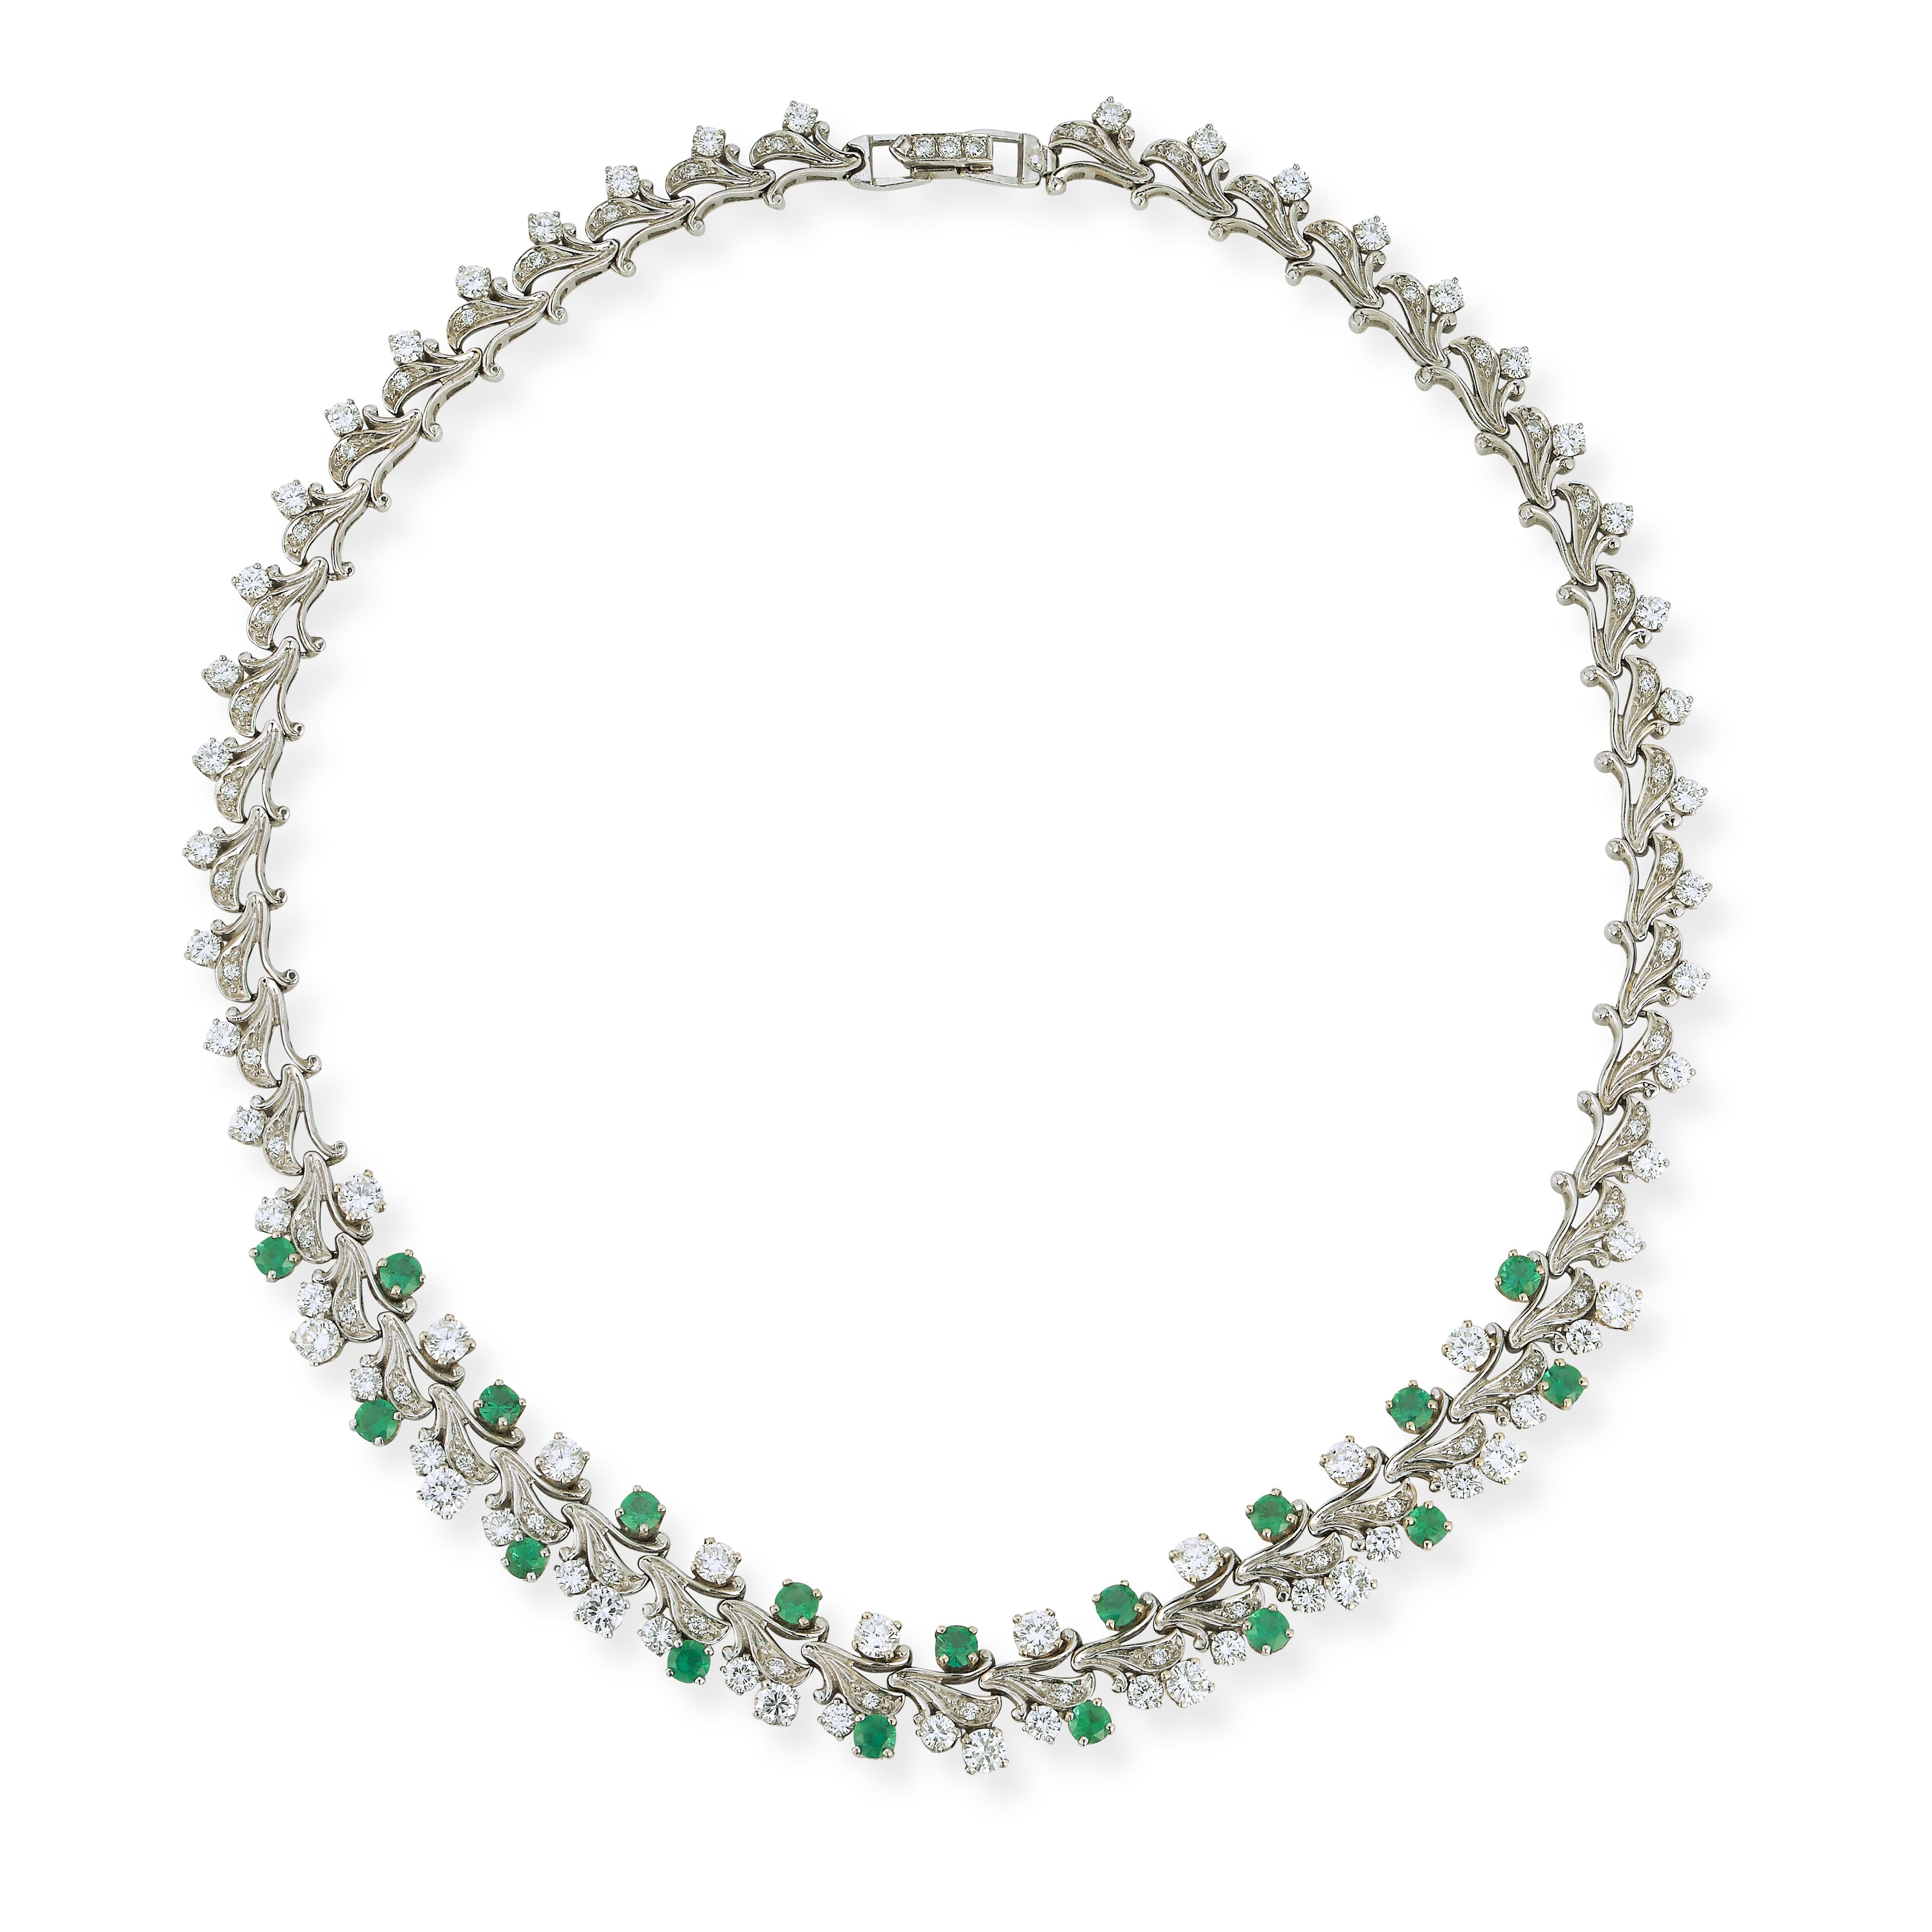 Zweireihige Diamant- und Smaragd-Halskette,  ein Muster aus rundgeschliffenen Diamanten und Smaragden, gefasst in 14 Karat Weißgold.

Abmessungen: 16